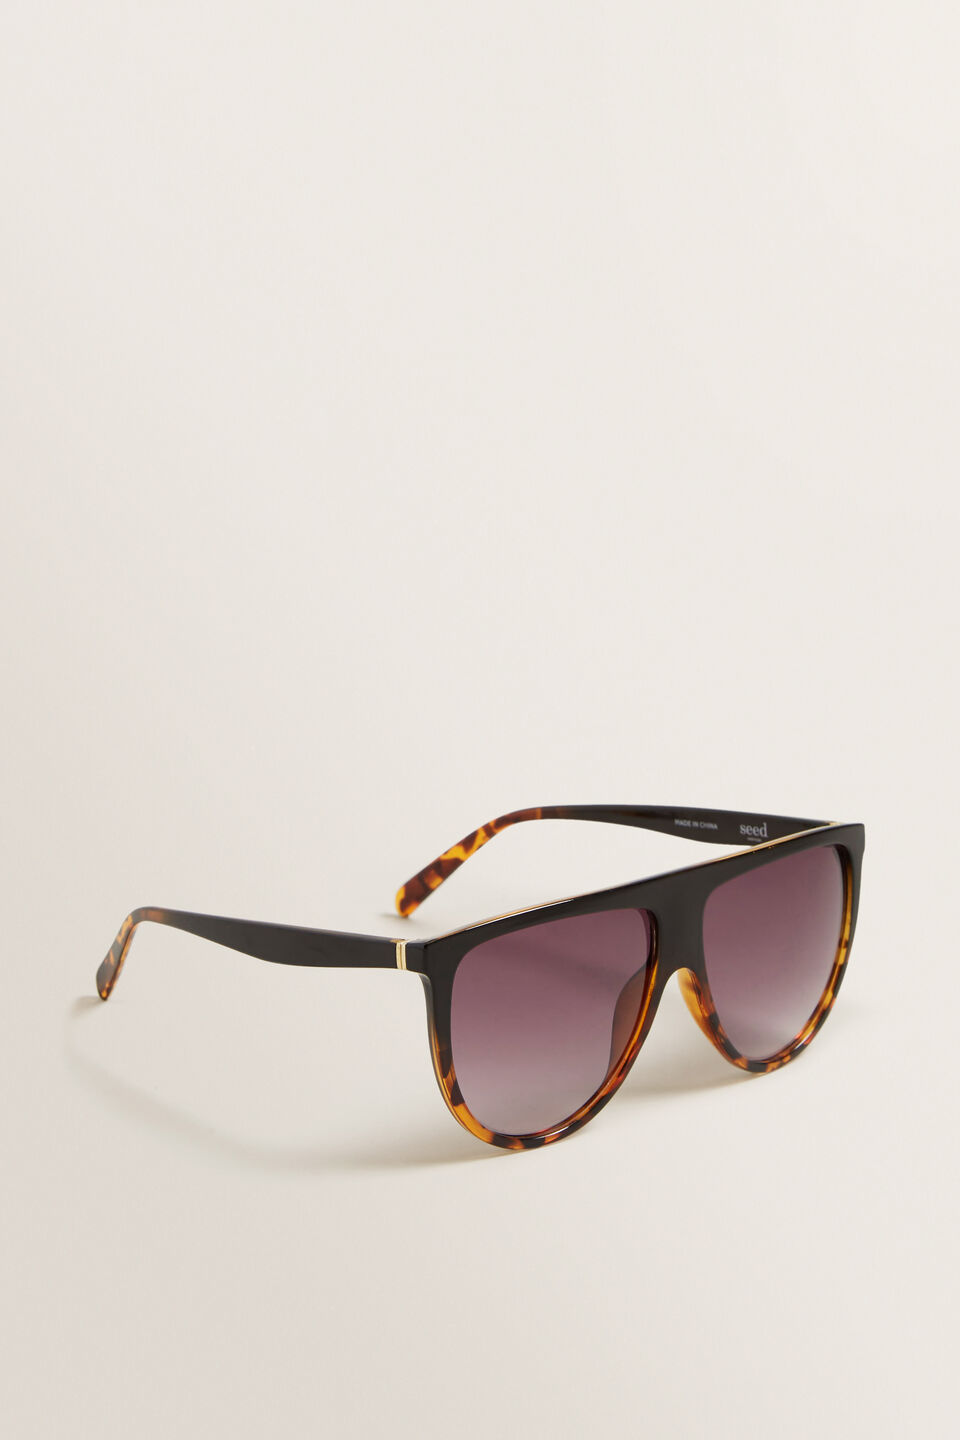 Lola Flat Top Sunglasses  